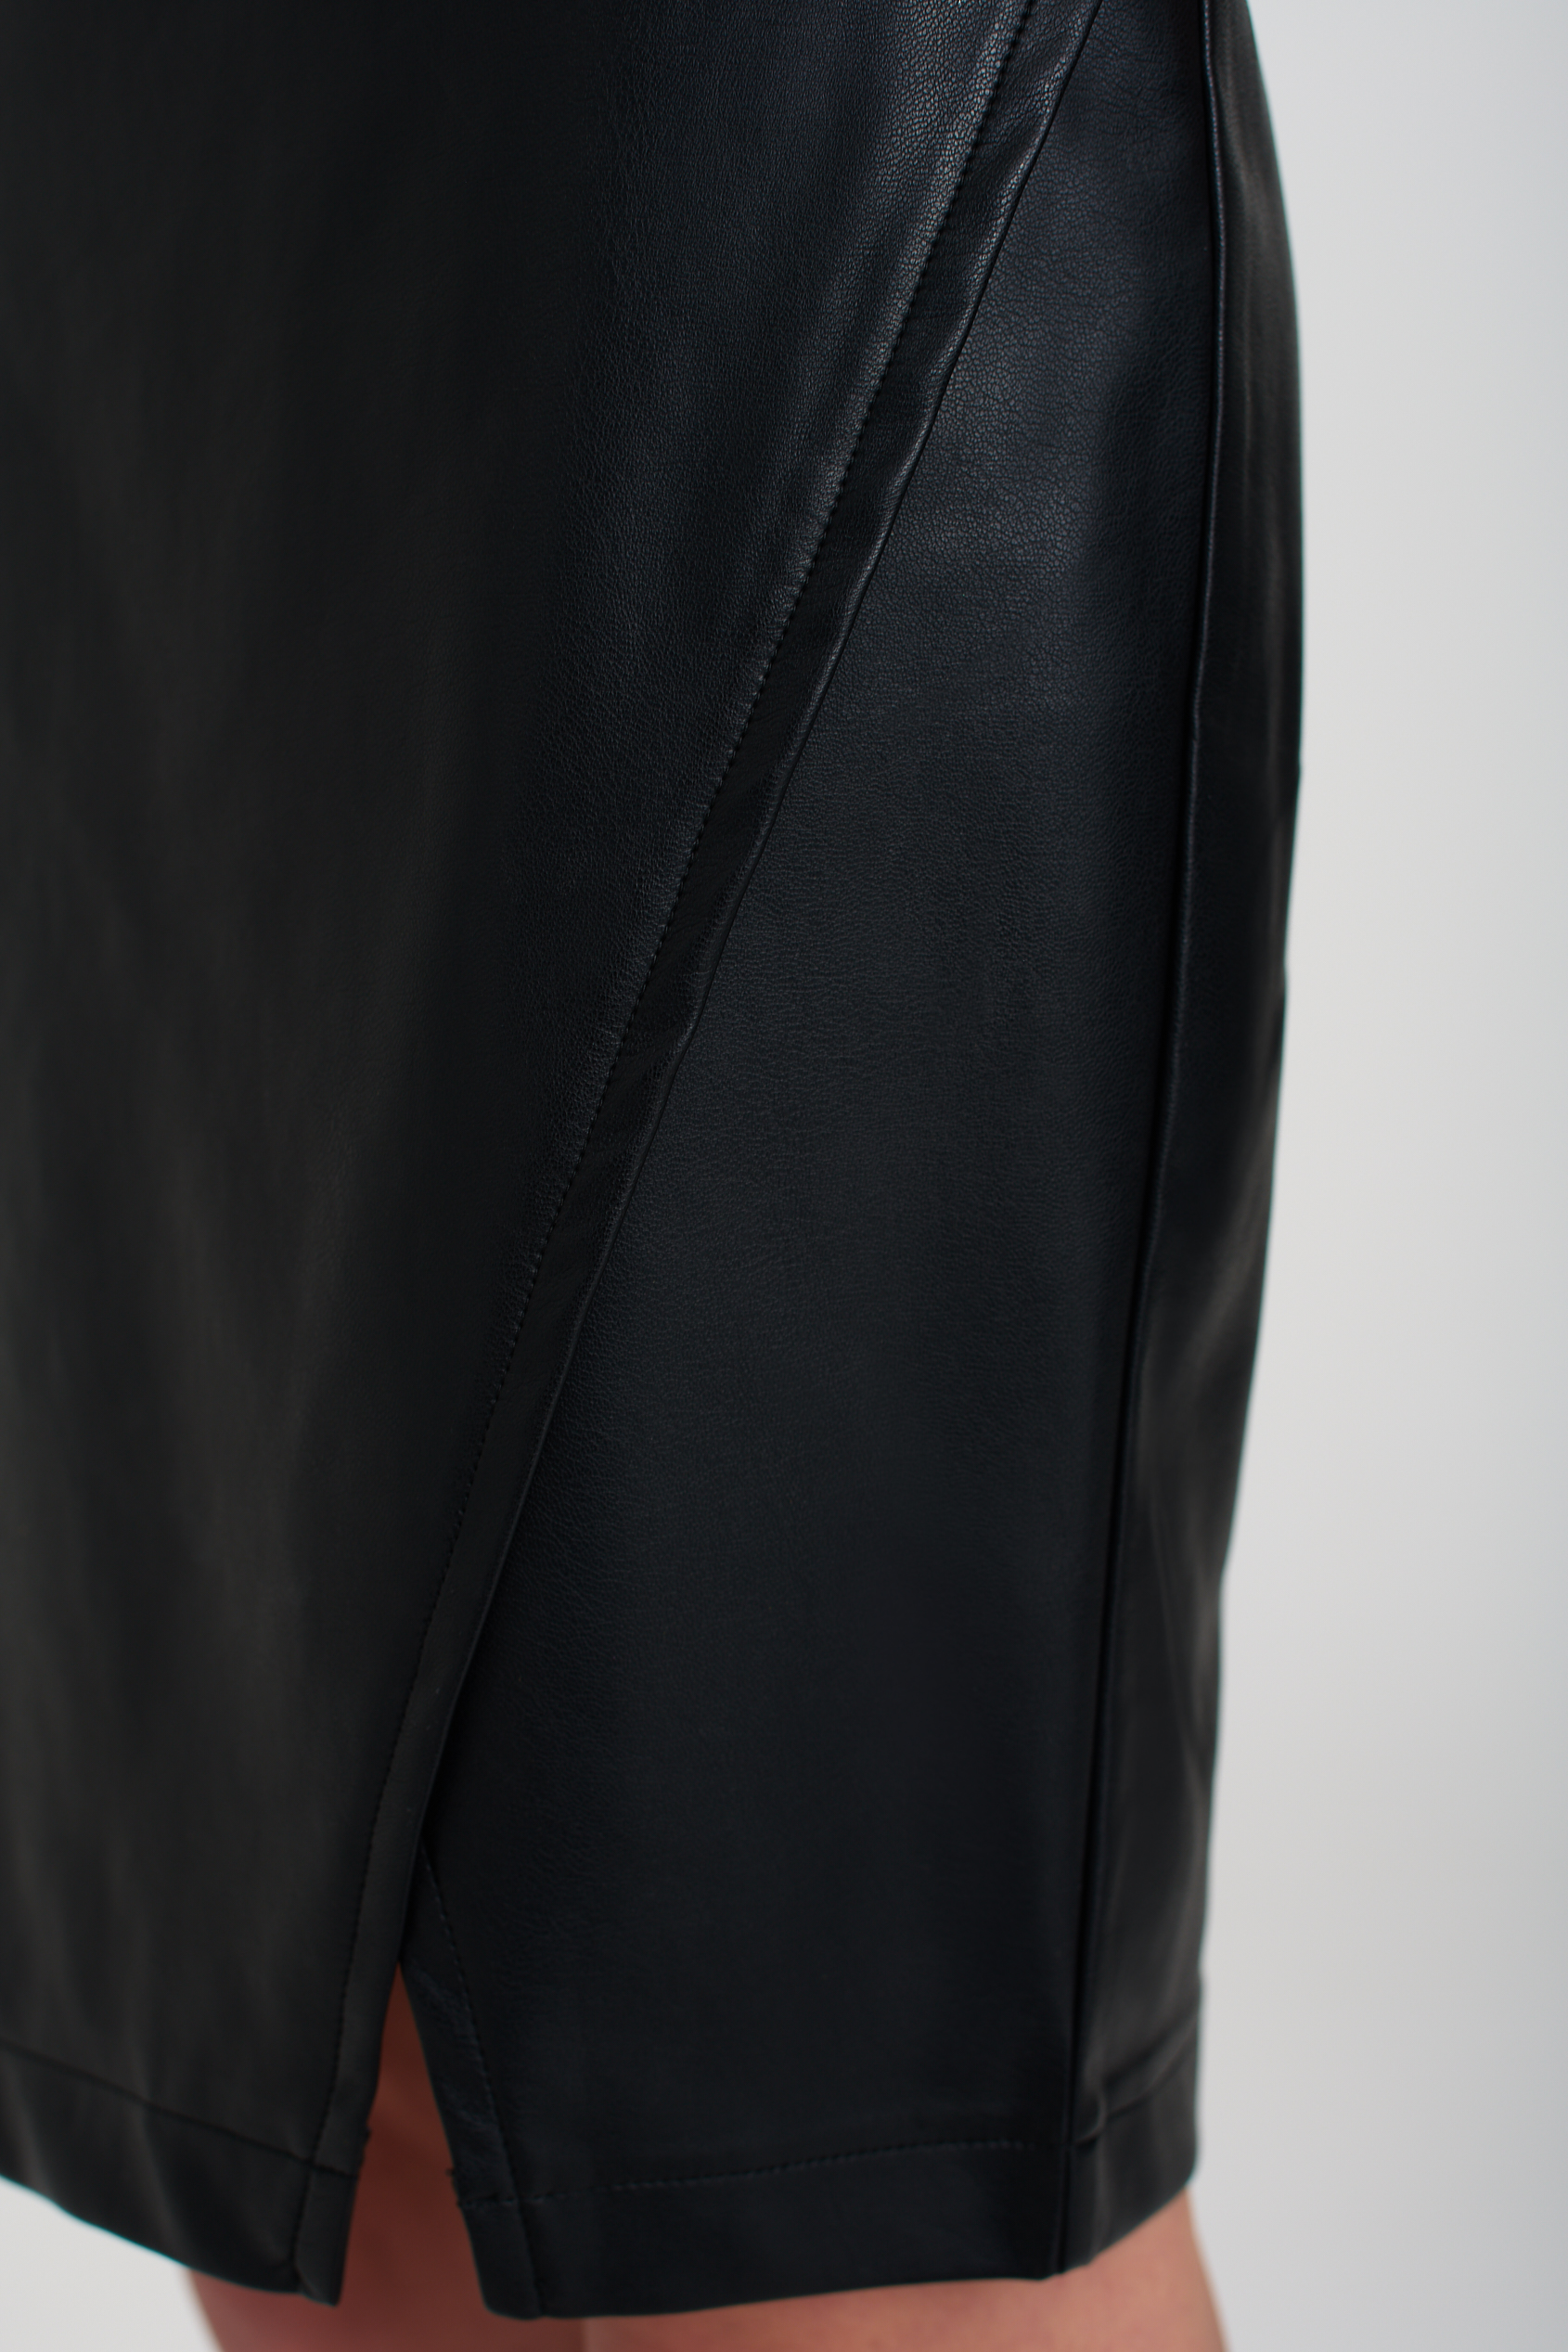 Elegancka spódnica ze skóry ekologicznej, czarna